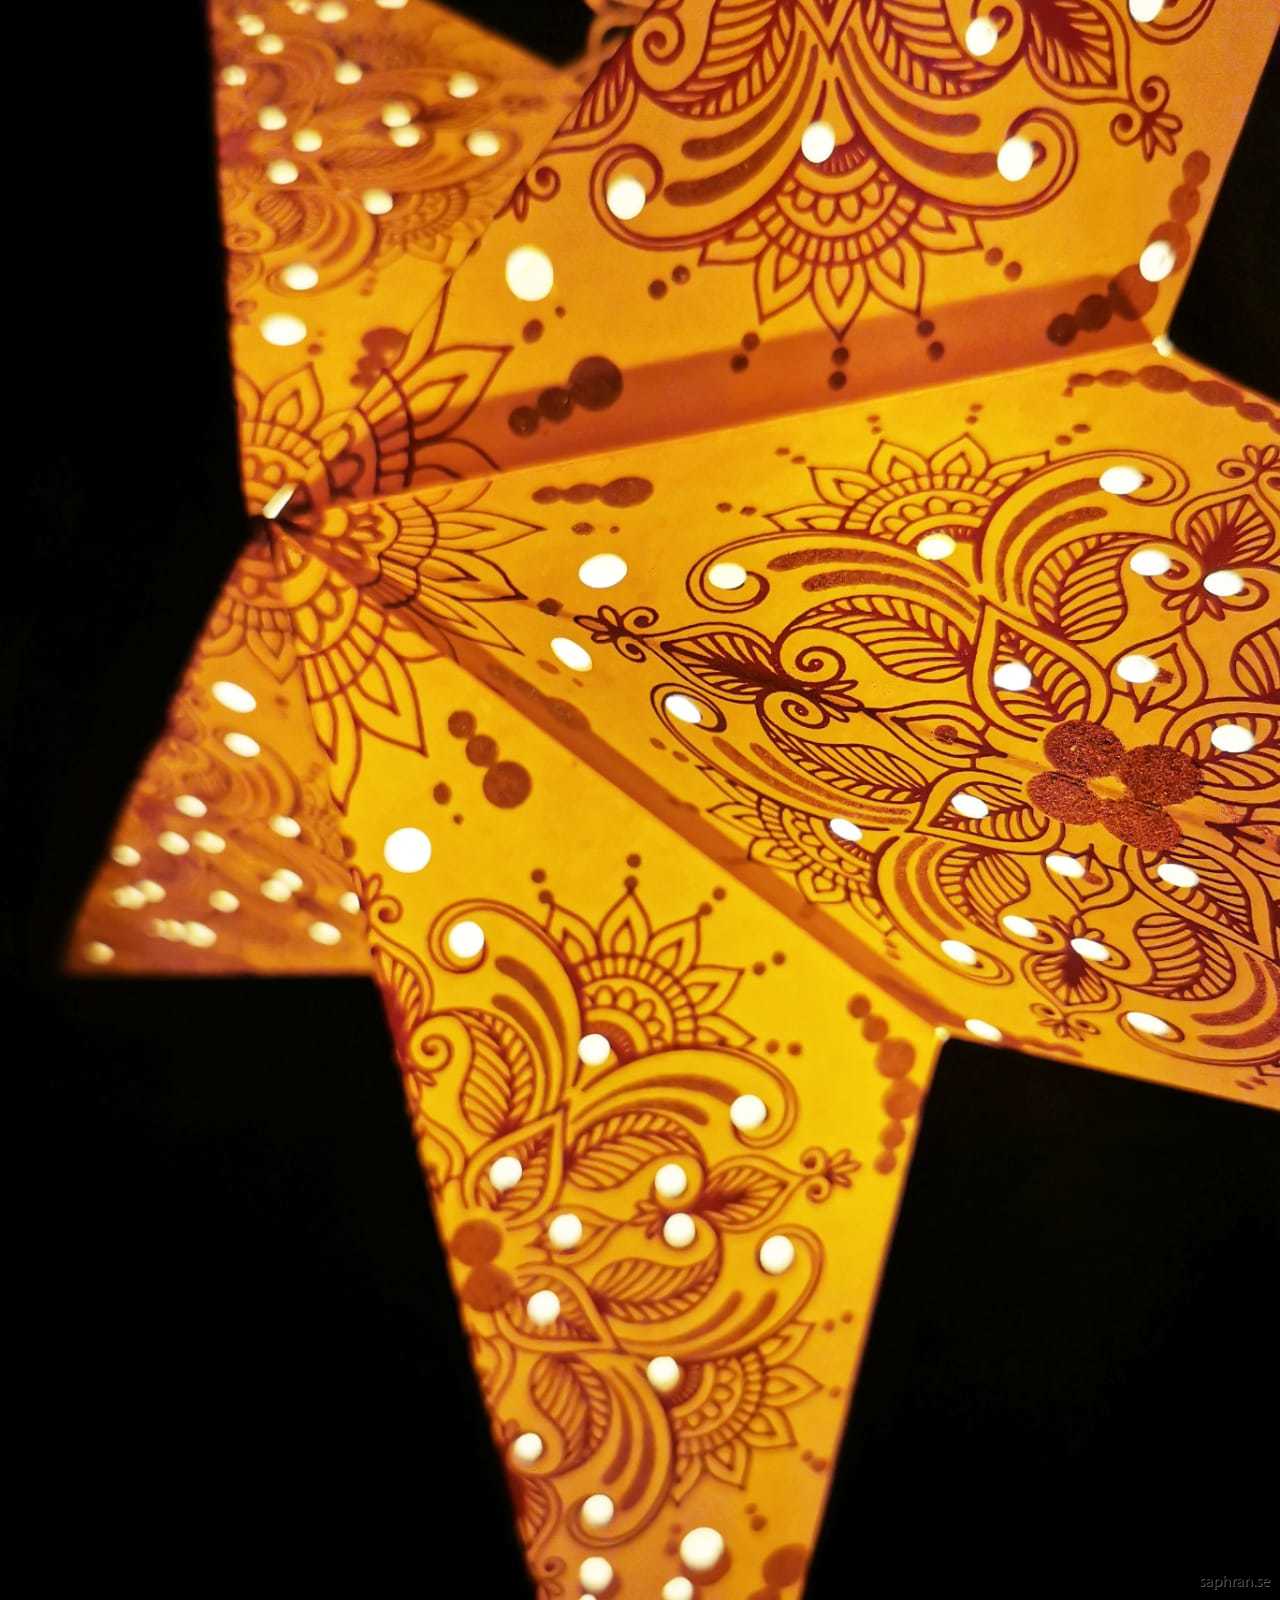 Färgglad, guldglittrig julstjärna i papper med lila detaljer